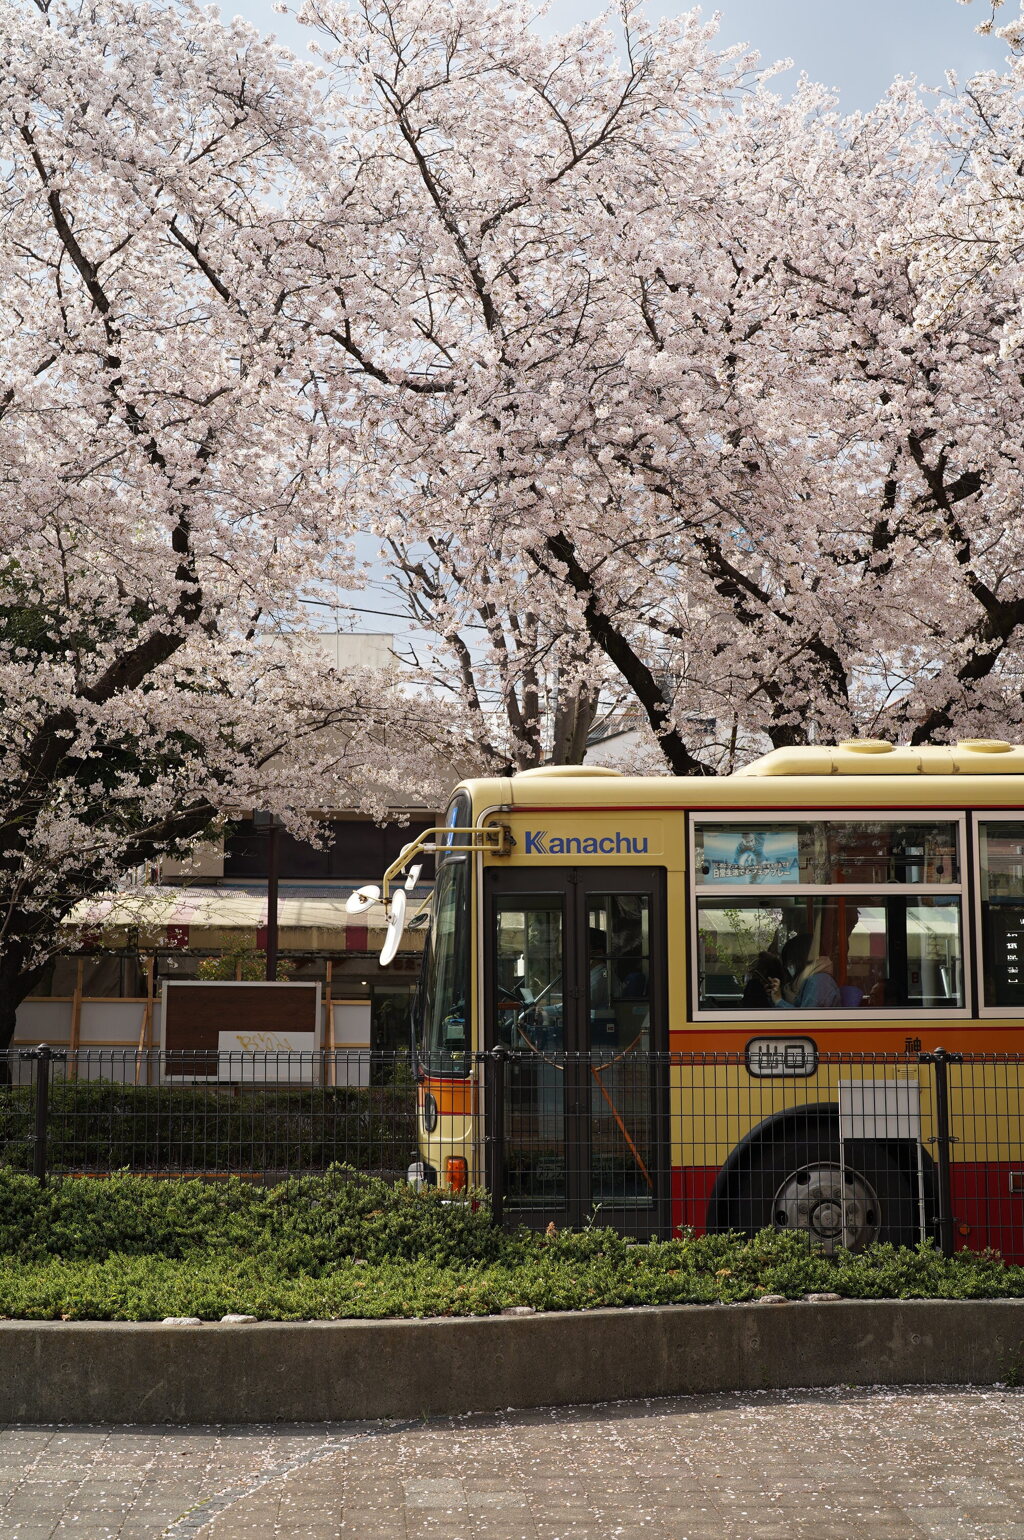 バス・桜